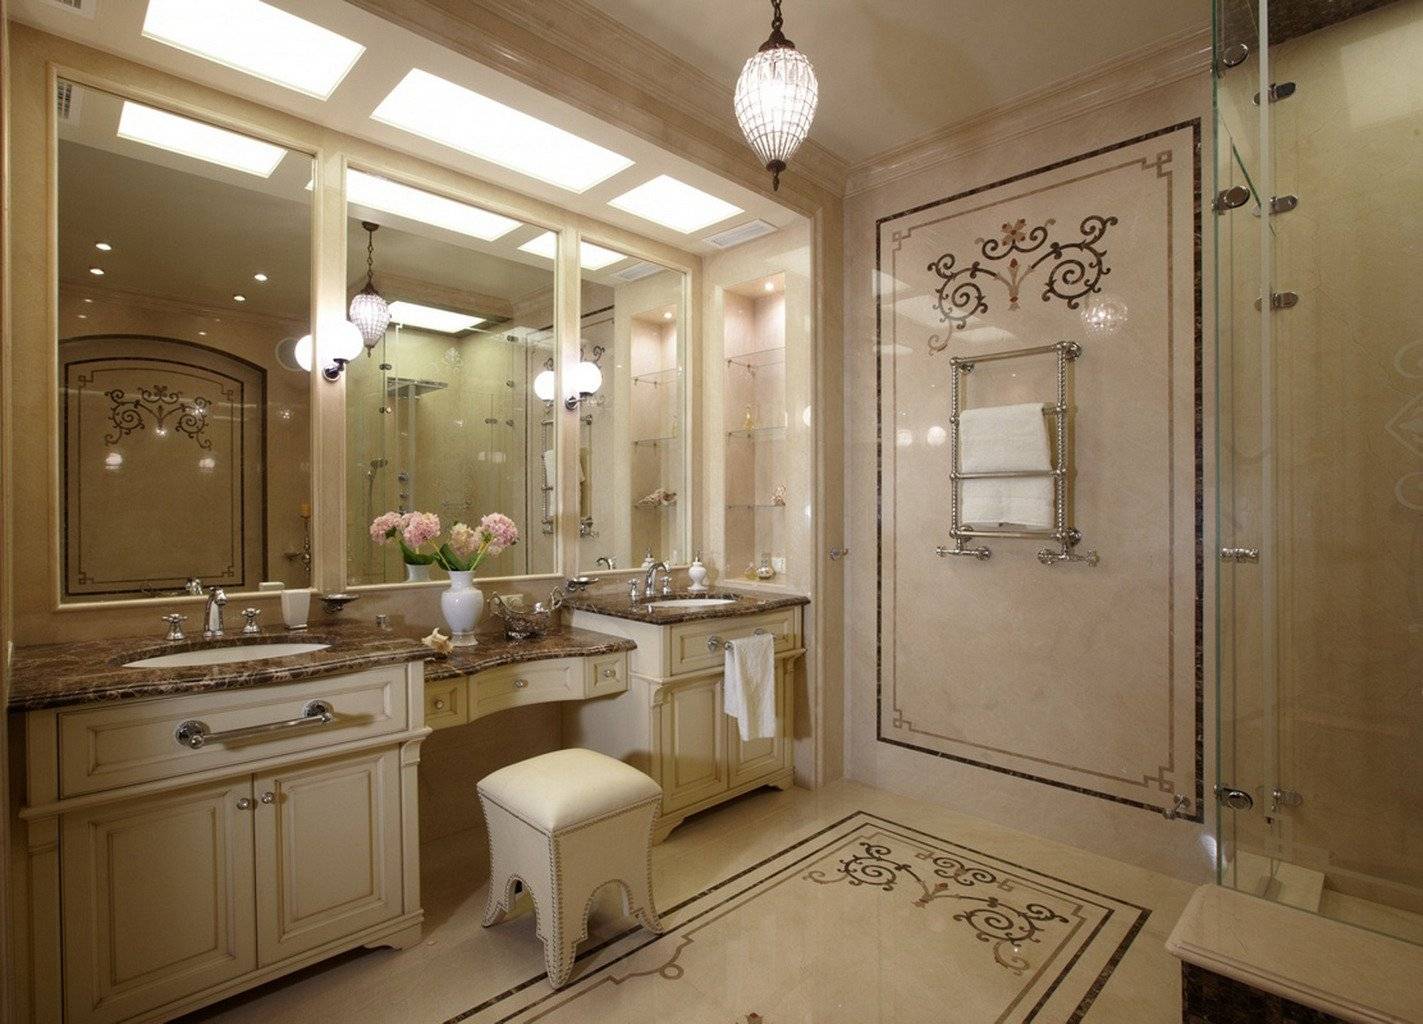 Ванная комната в классическом стиле на современный манер